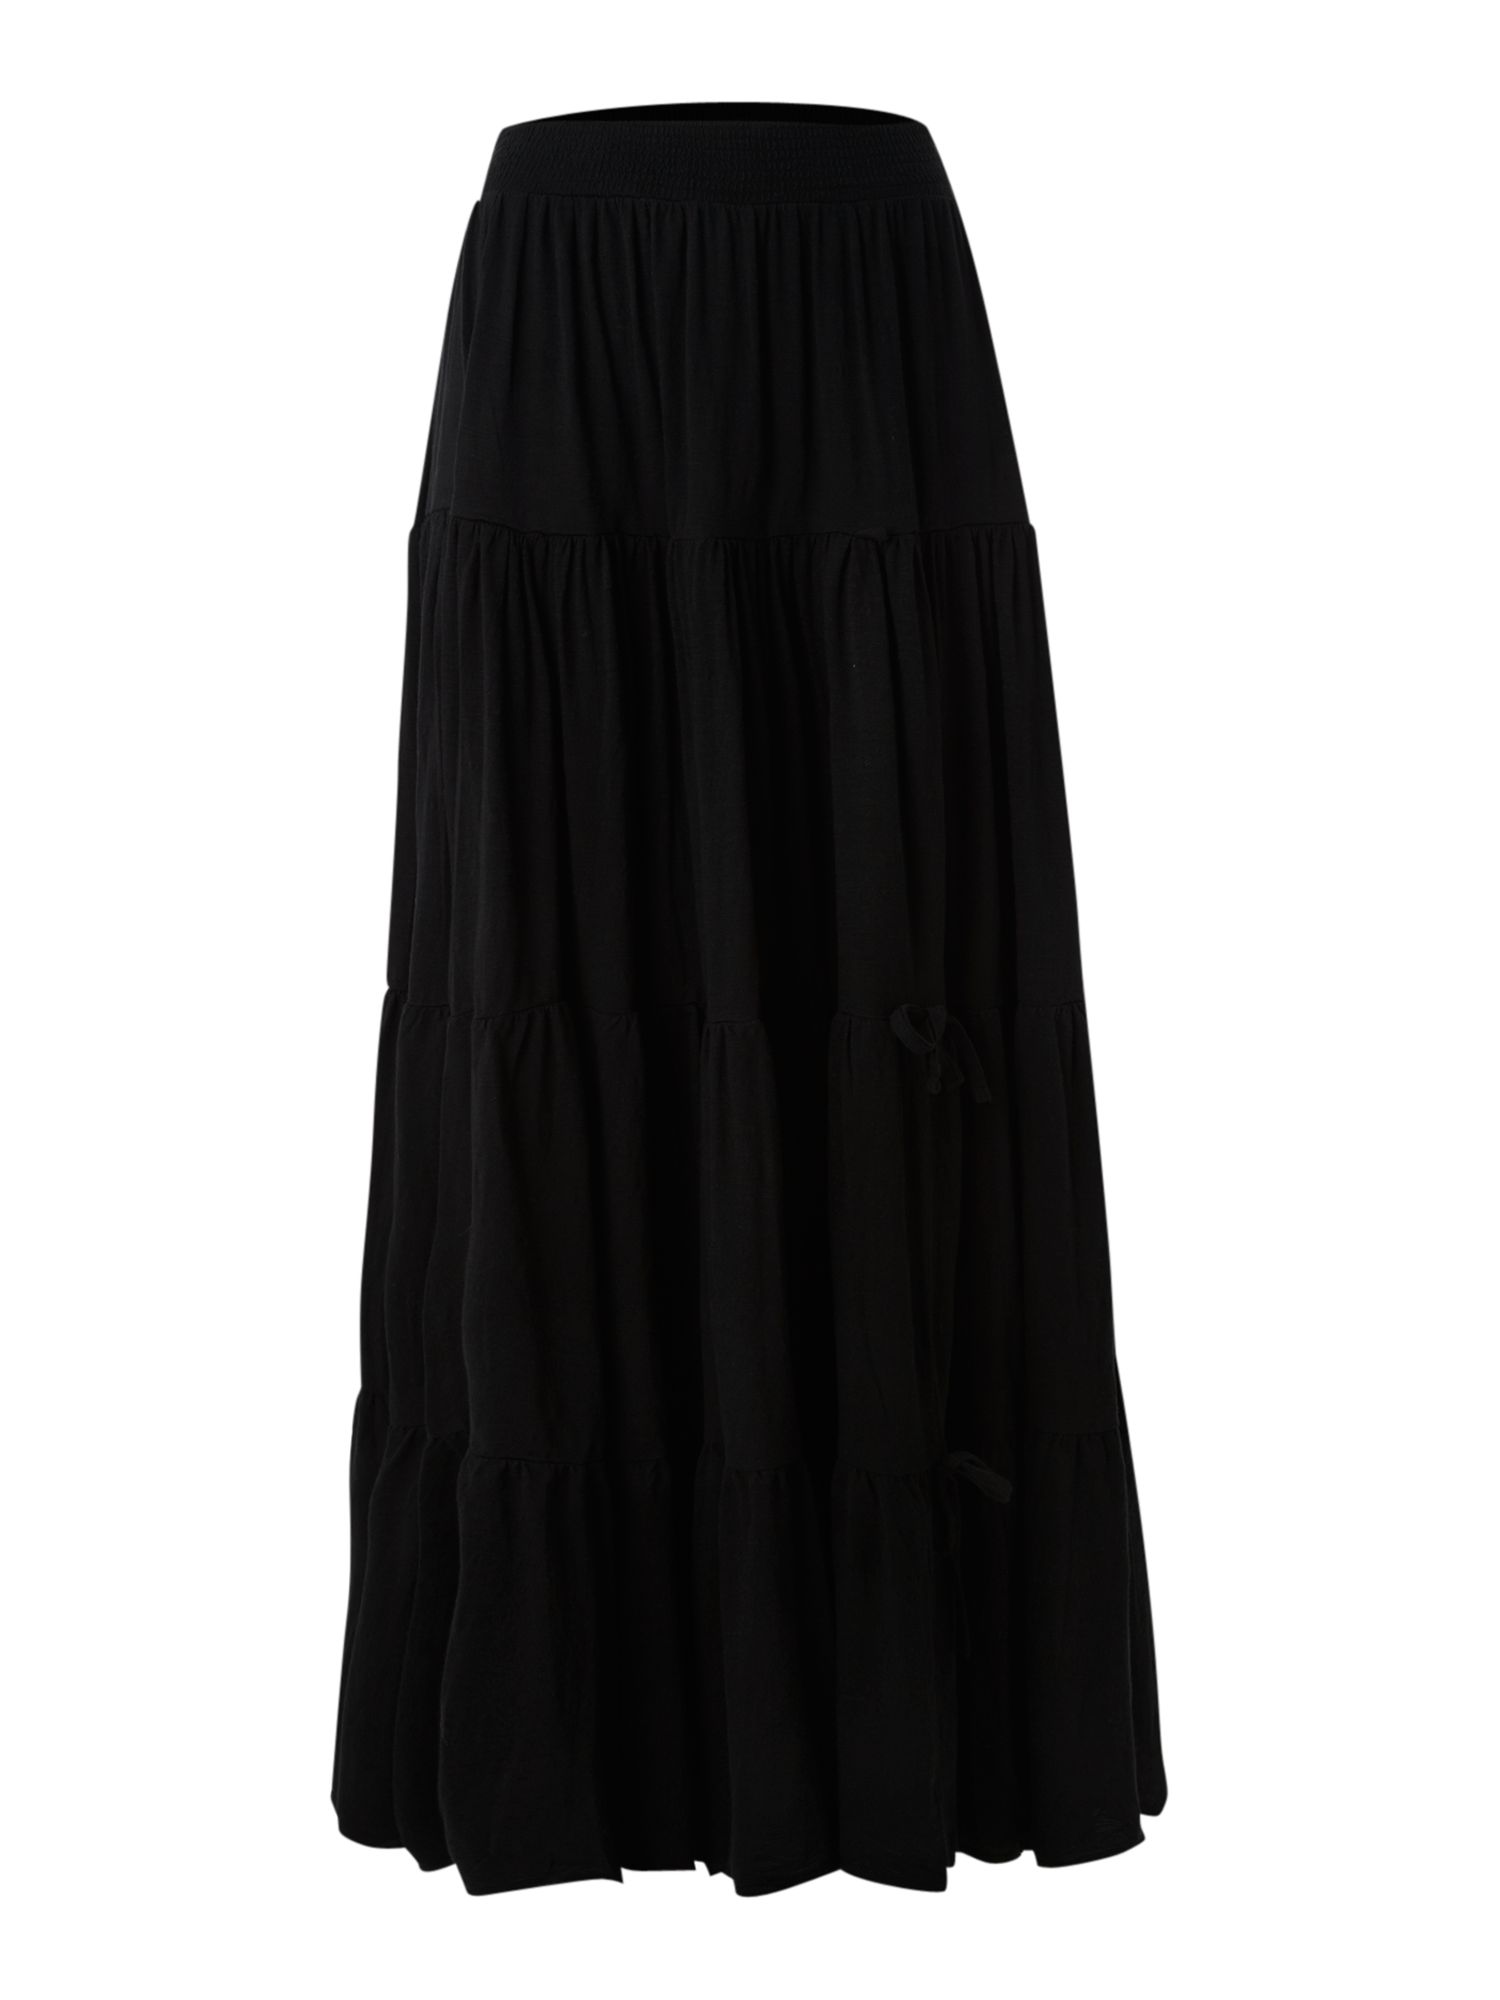 Denim & Supply Ralph Lauren Gypsy Tie Up Skirt in Black | Lyst